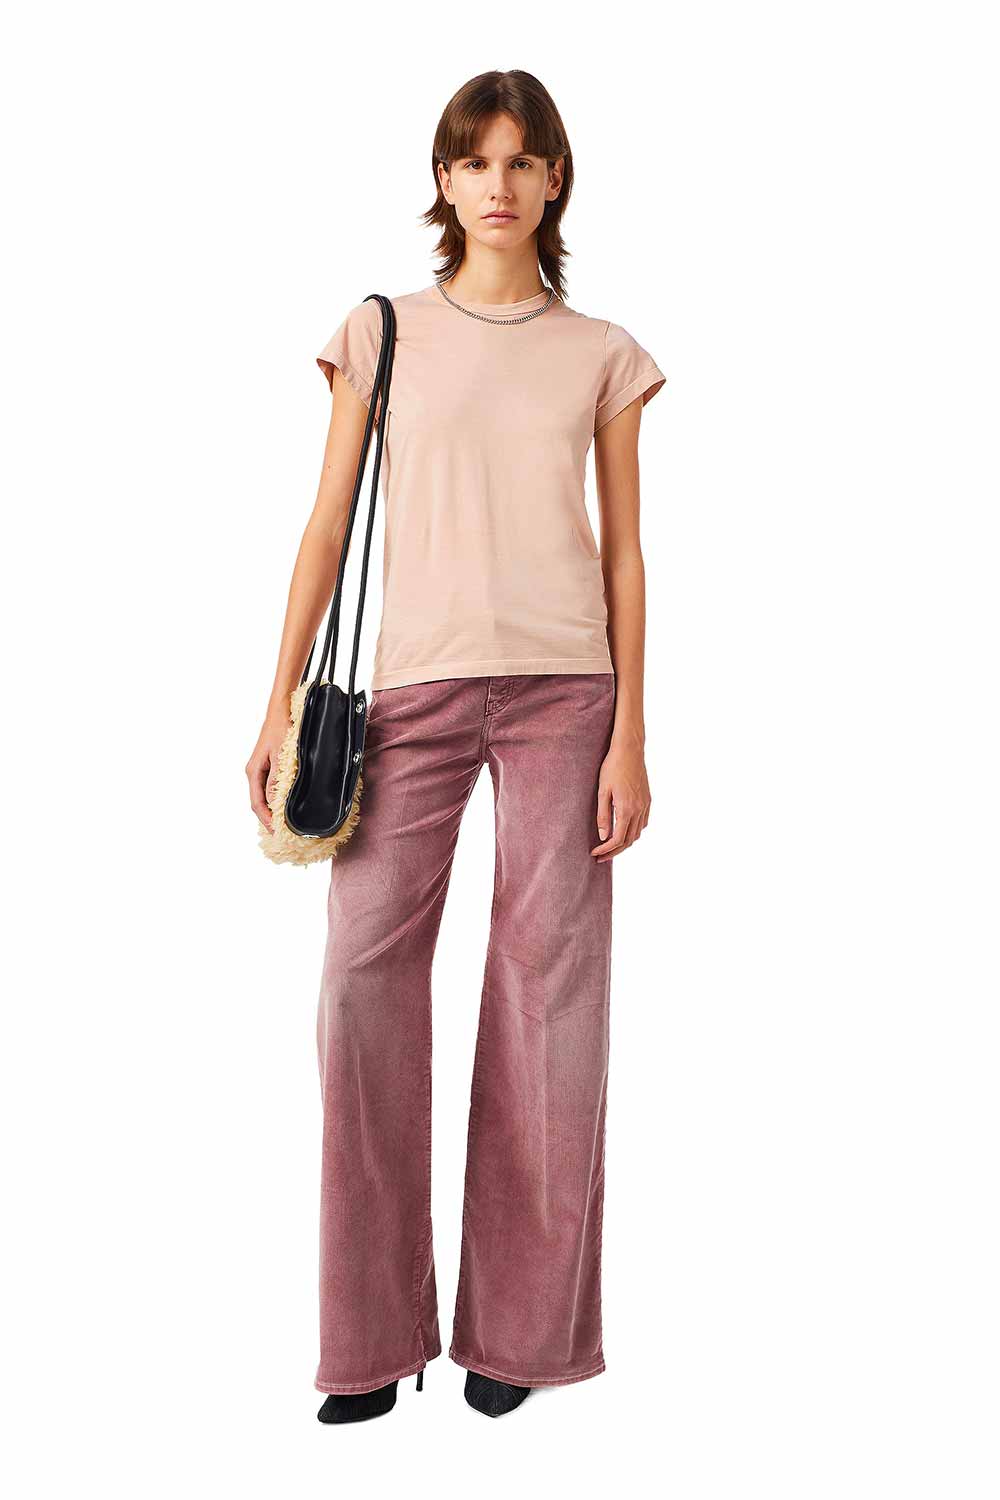 modelo vestindo Look marca Diesel em jeans colorido tom de beterraba bem como t-shirt rosa bolsa e sapatos pretos